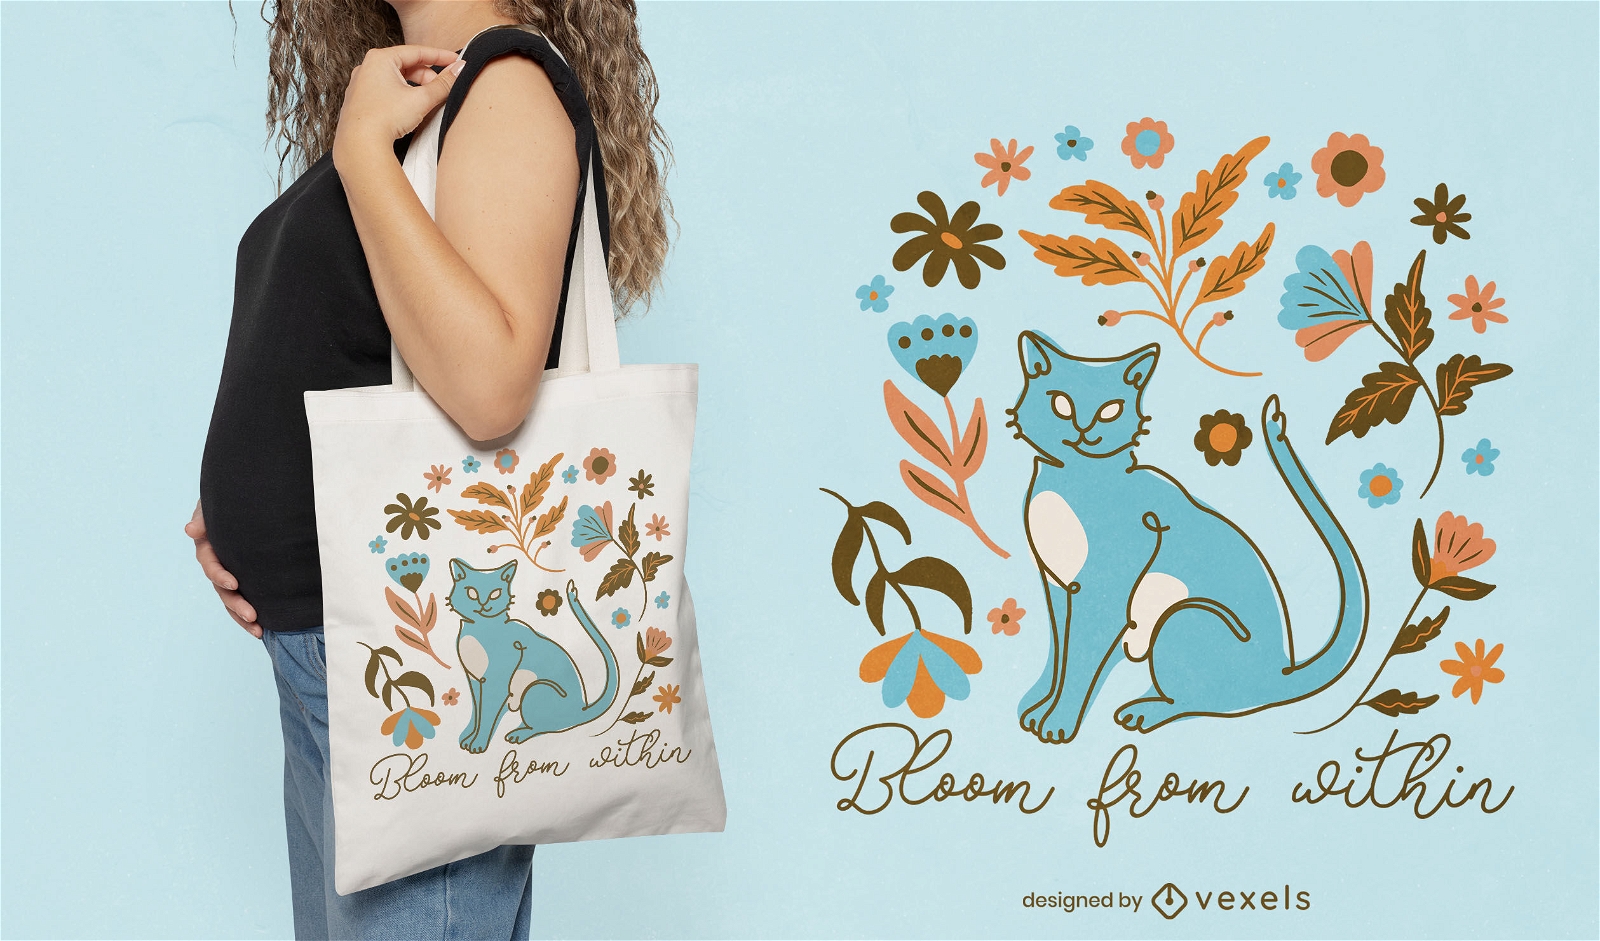 Diseño de bolso tote de gato y flores.